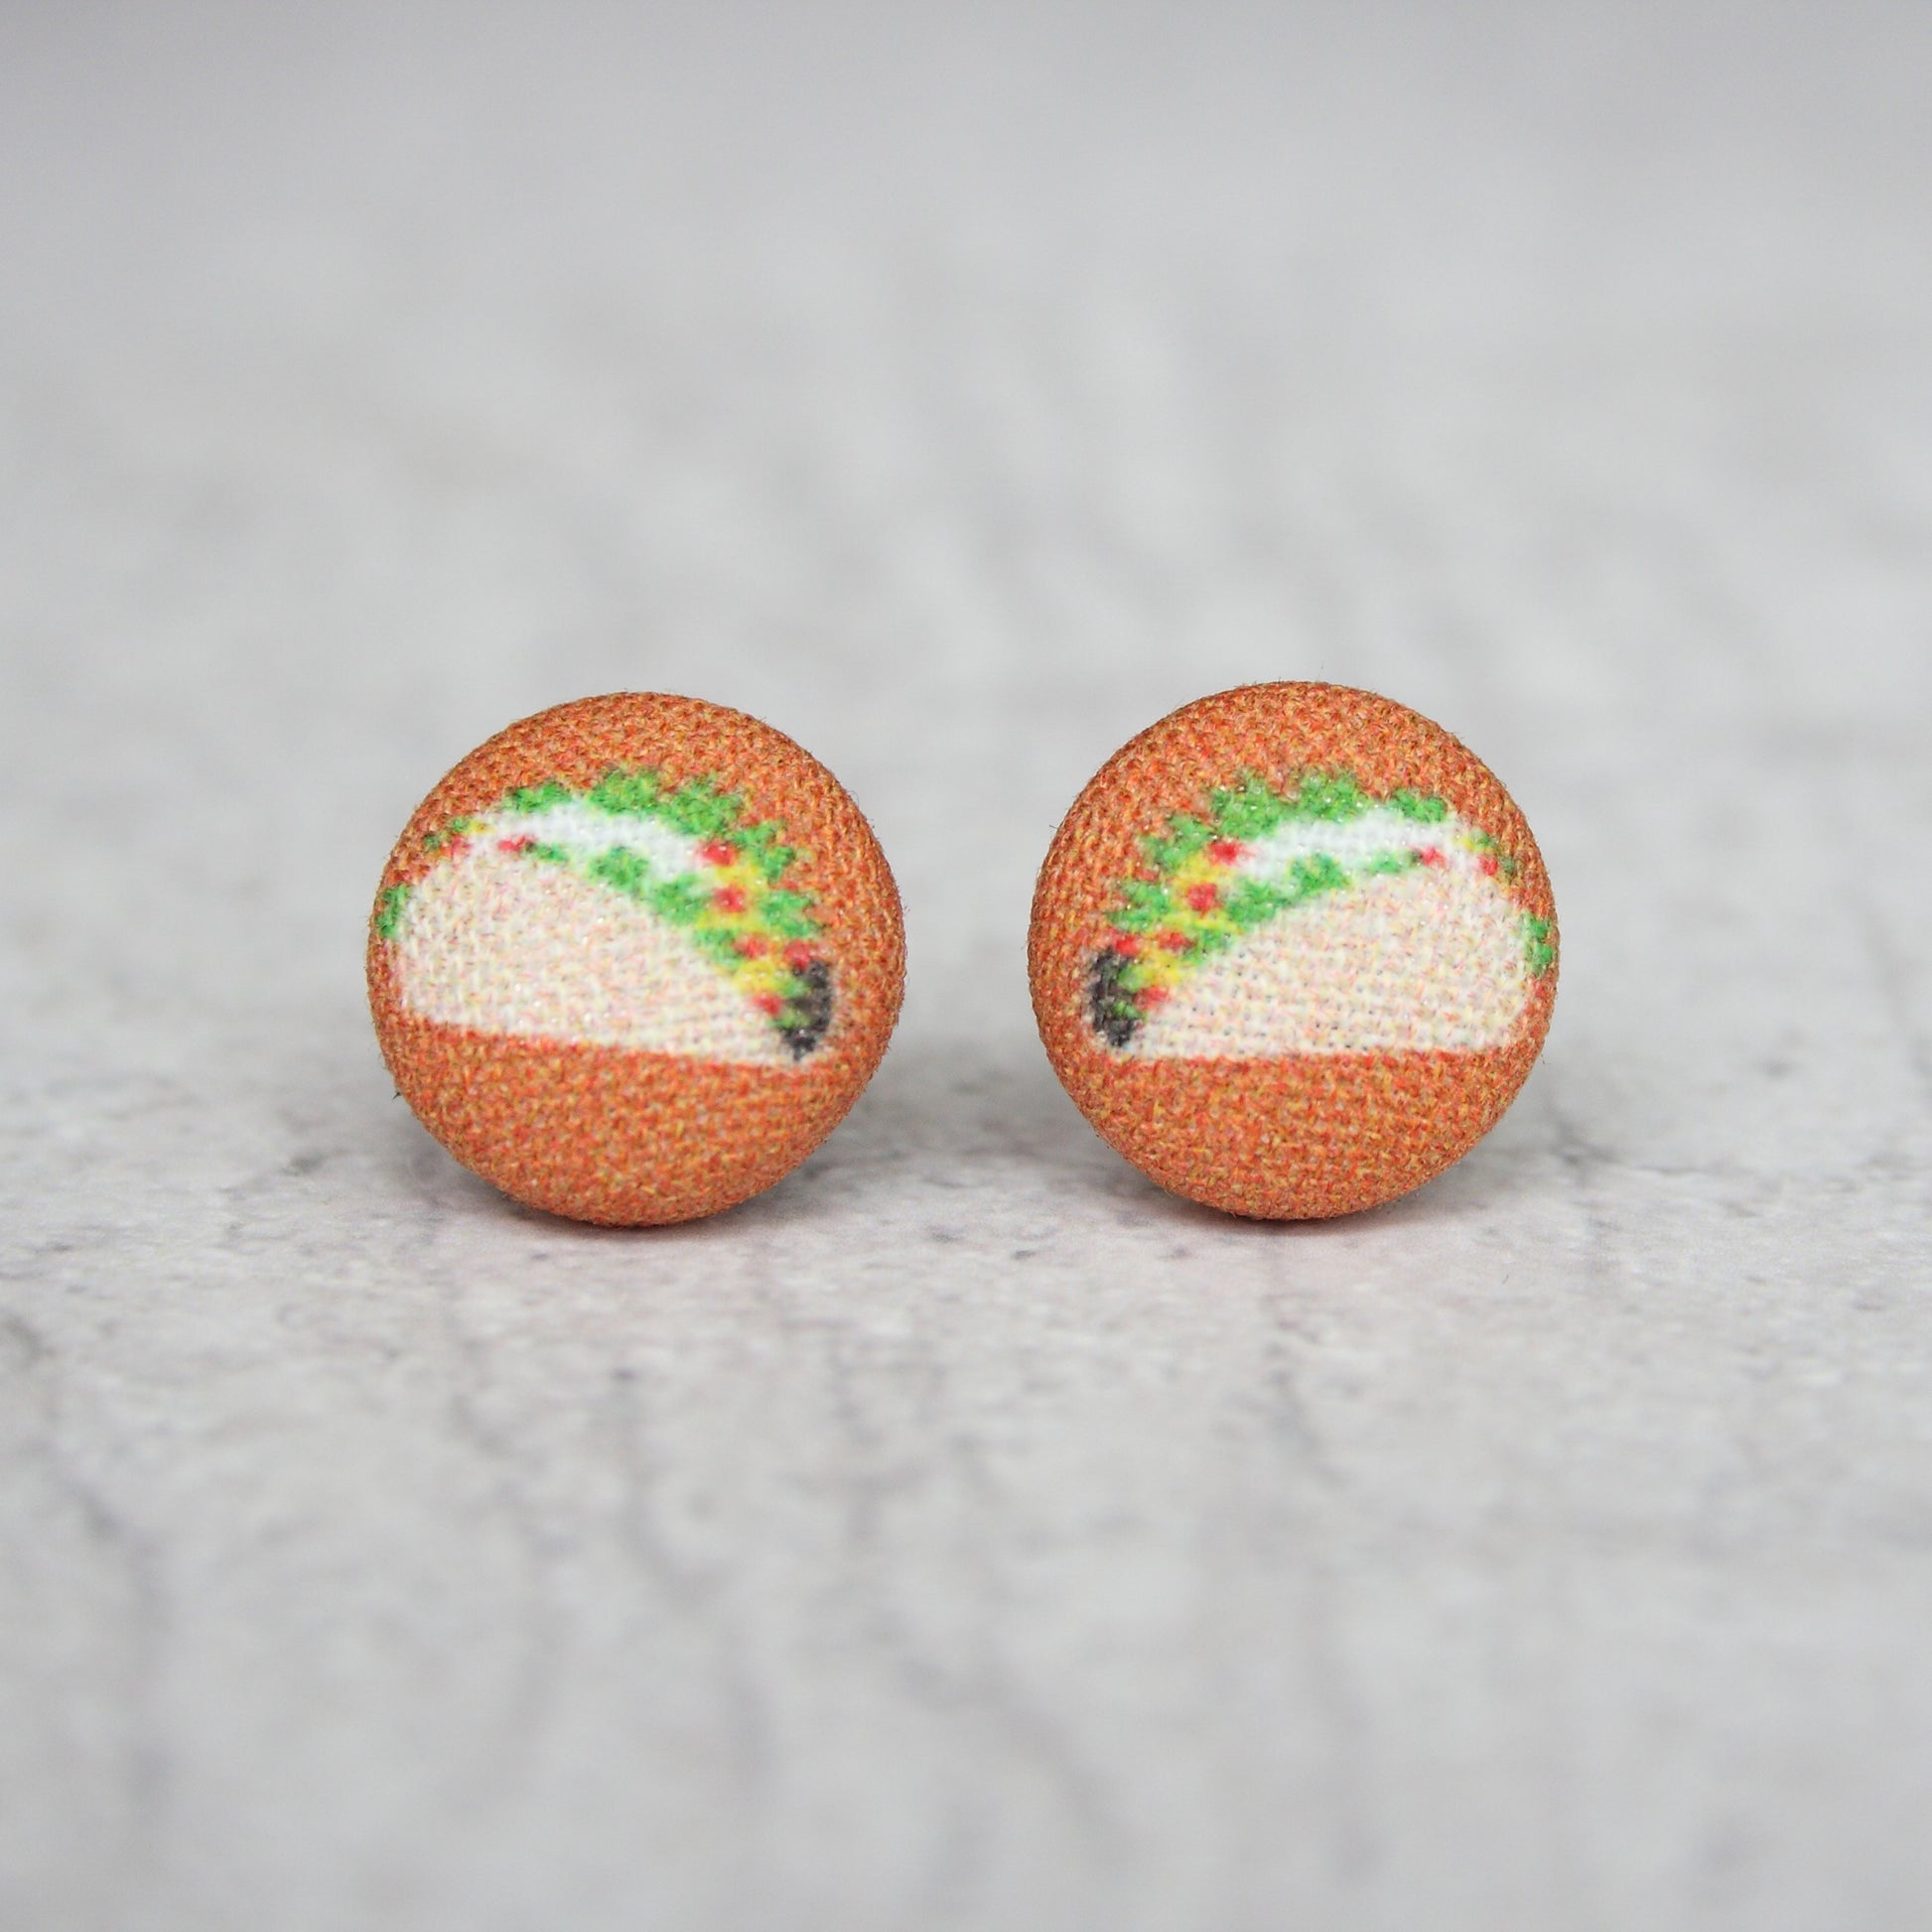 Rachel O's Taco Fabric Button Earrings